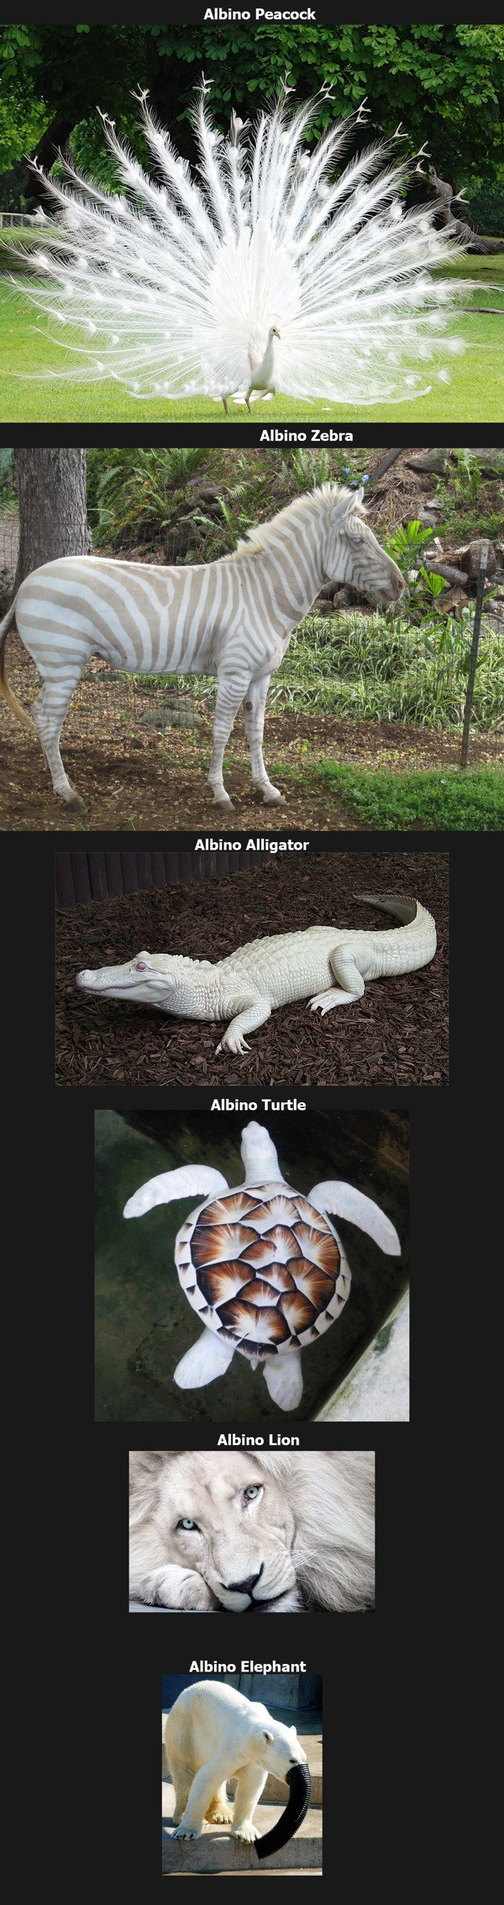 Albine animals - meme